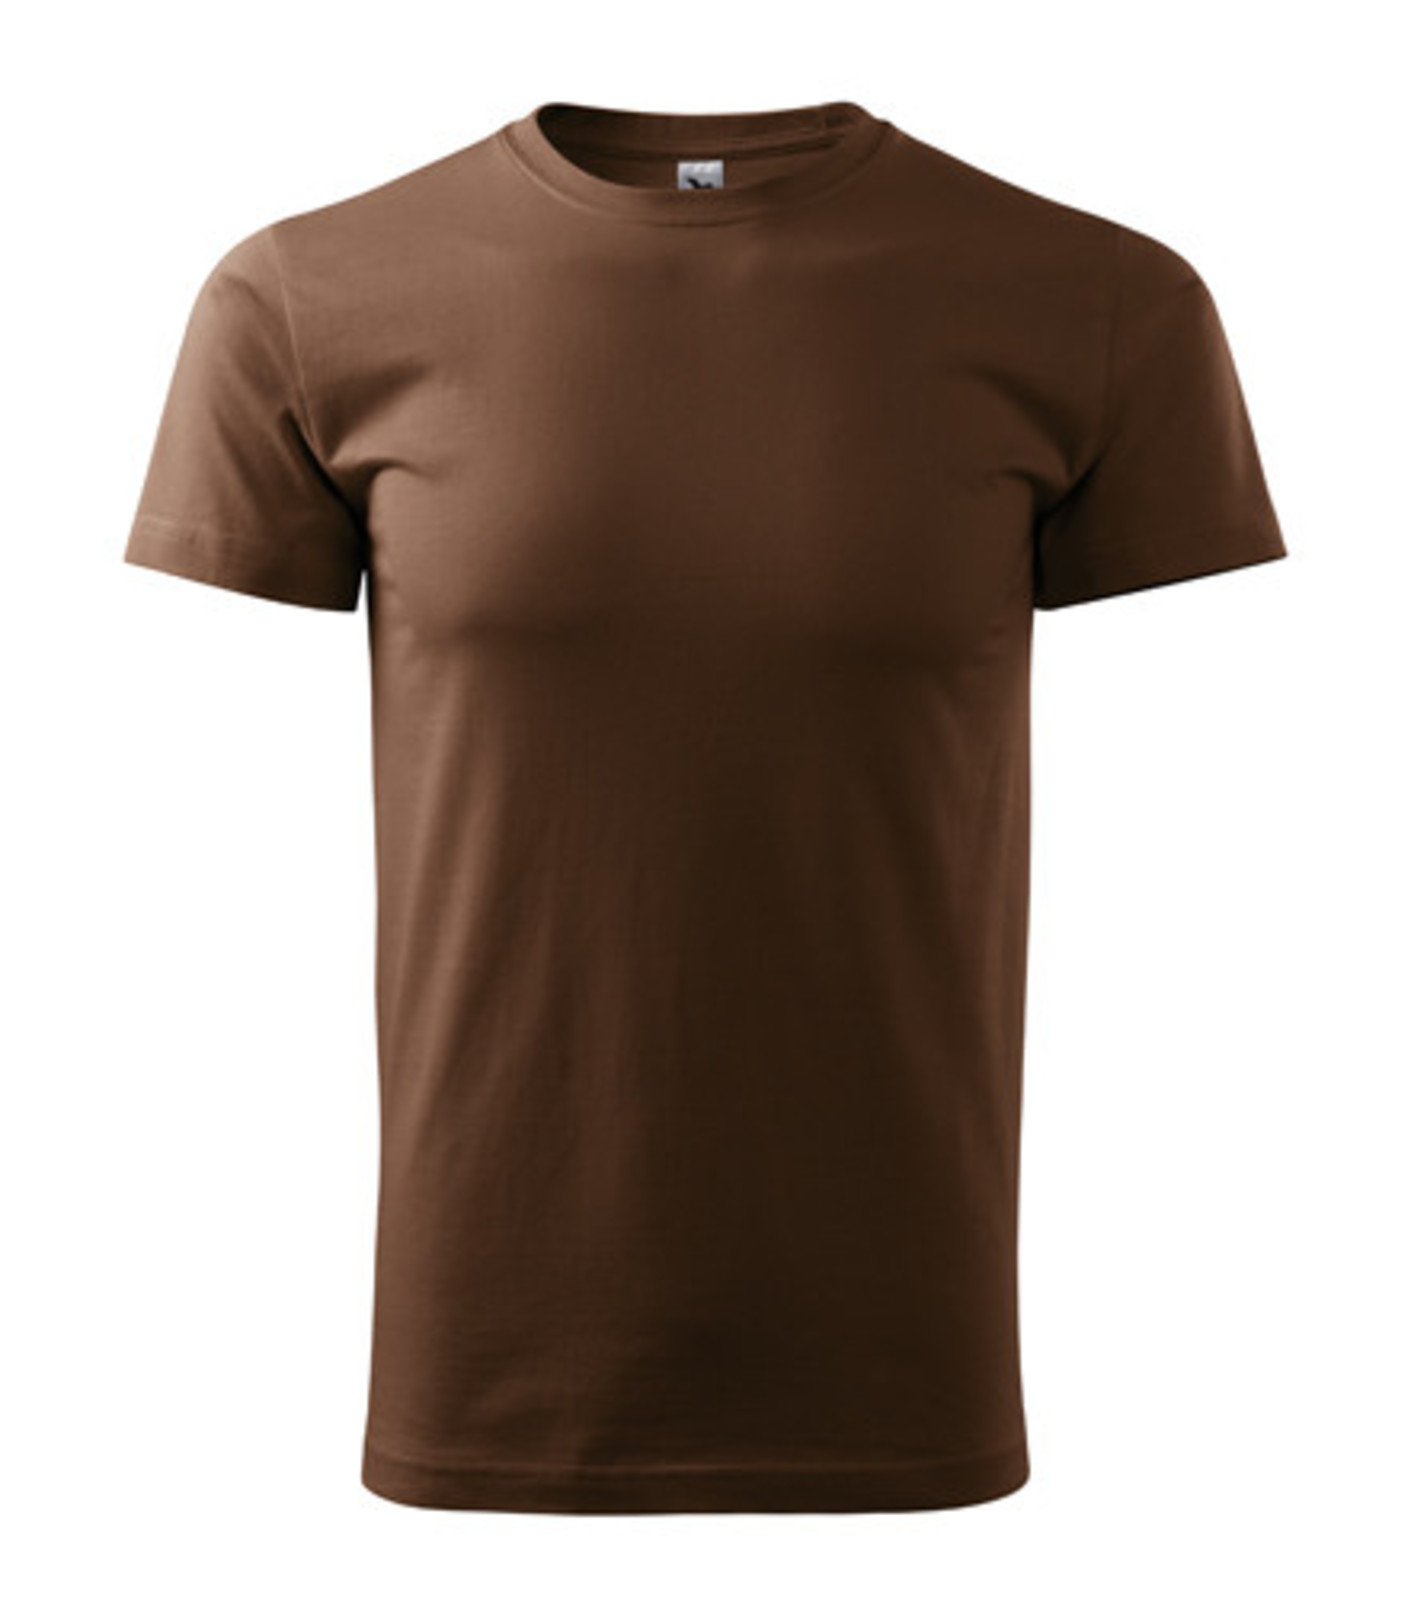 Pánske tričko Malfini Basic 129 - veľkosť: XS, farba: čokoládová